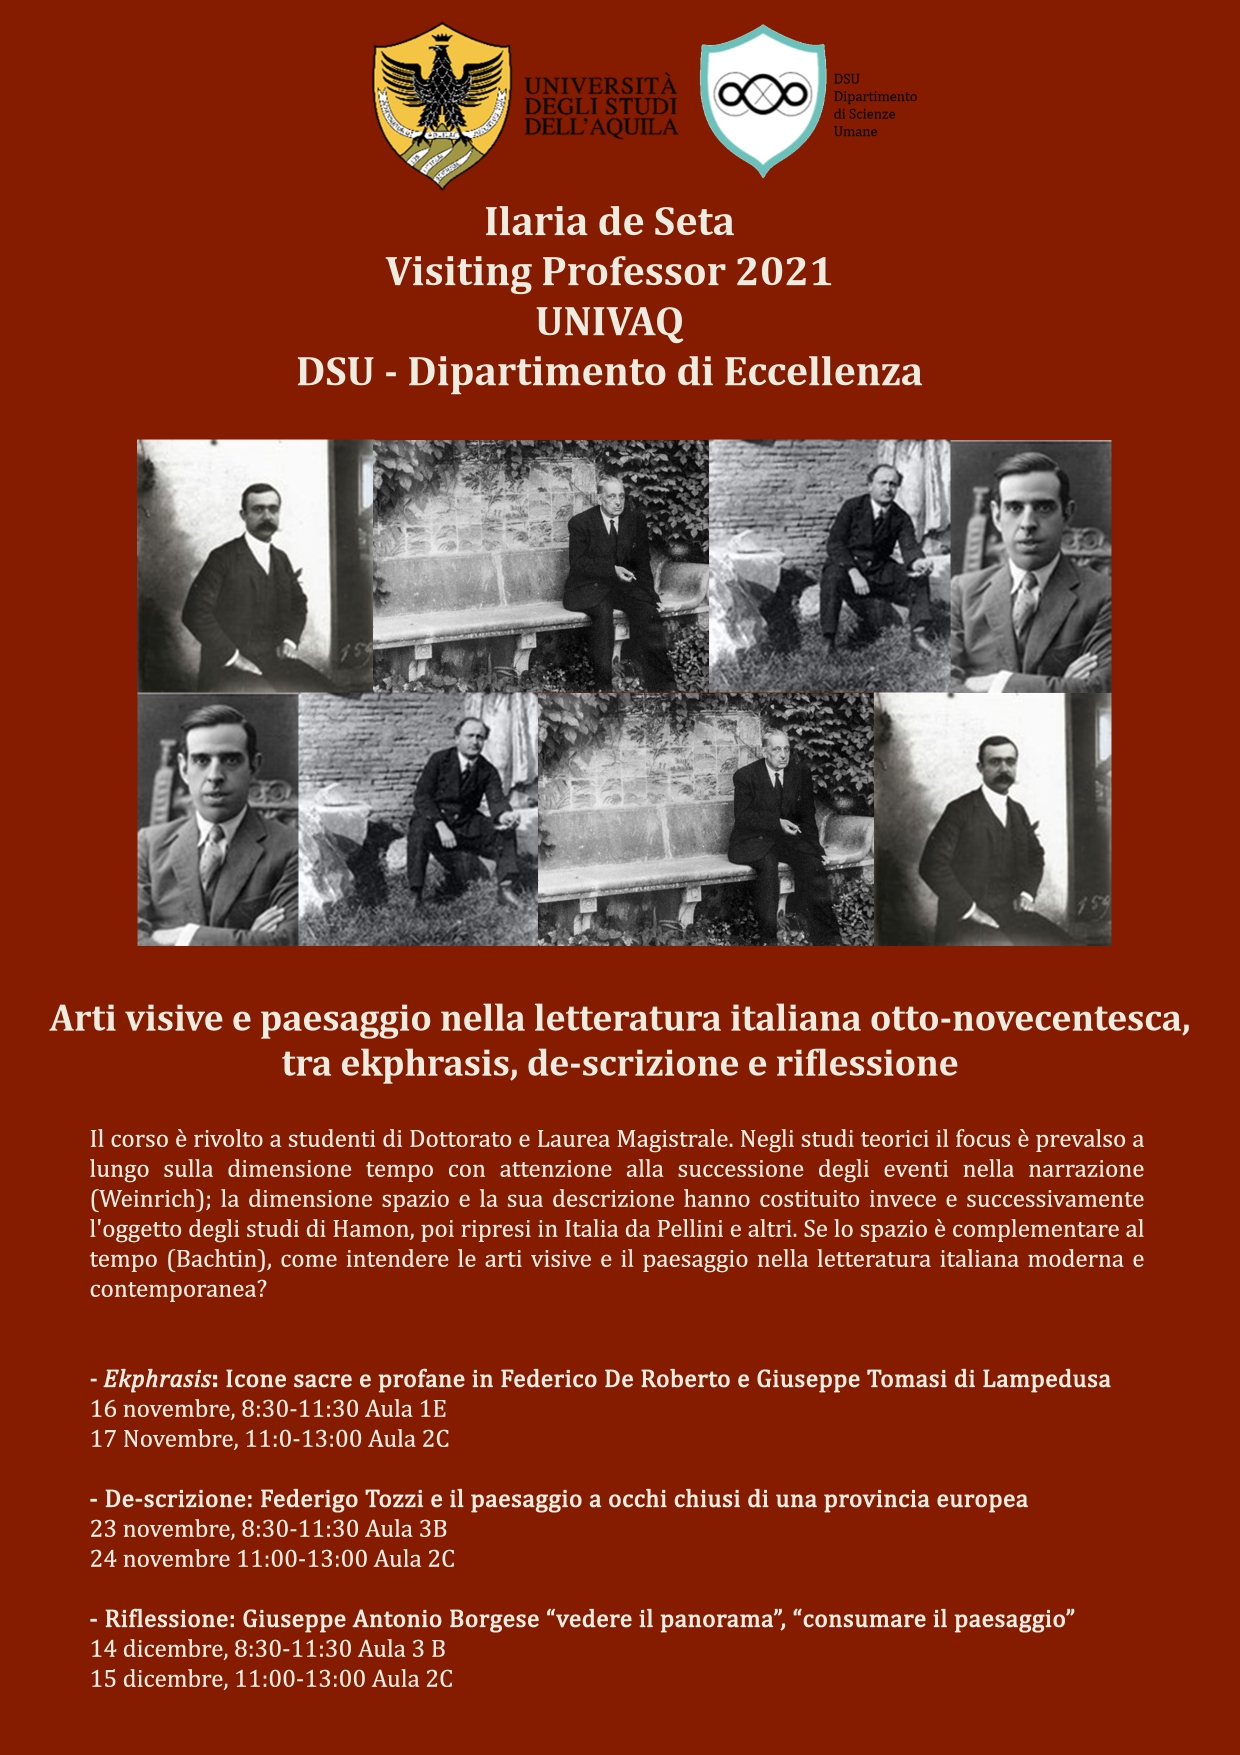 Arti visive e paesaggio nella letteratura italiana otto-novecentesca, tra ekphrasis, de-scrizione e riflessione